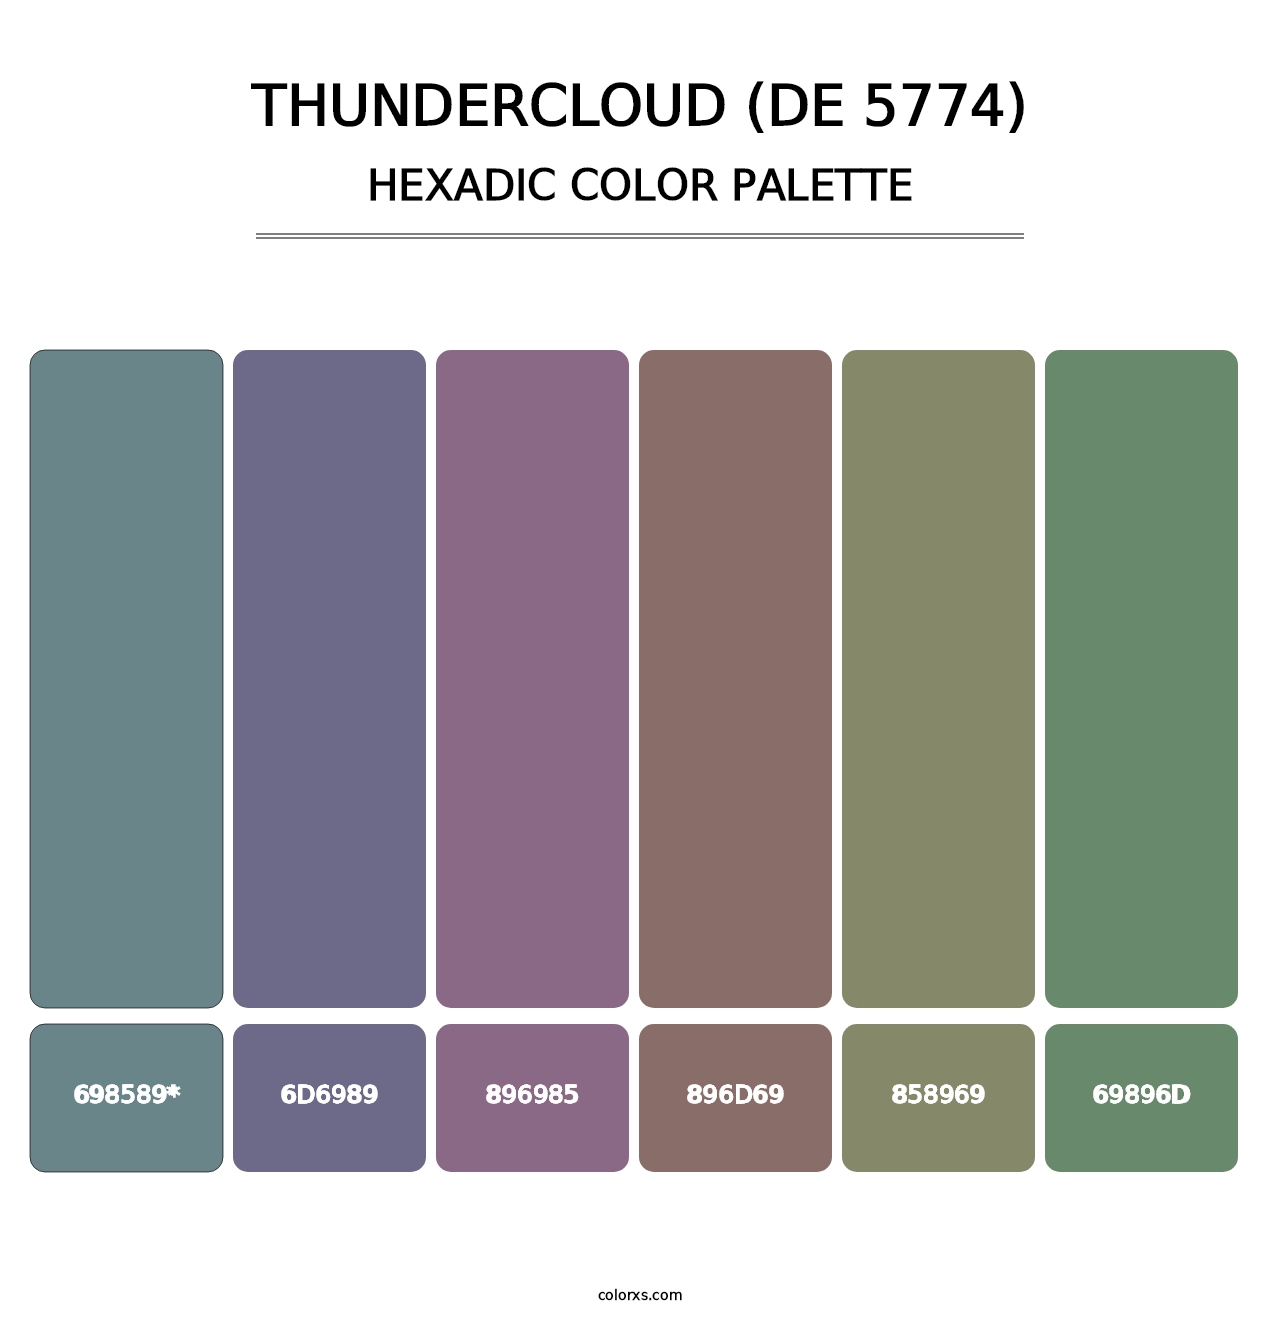 Thundercloud (DE 5774) - Hexadic Color Palette